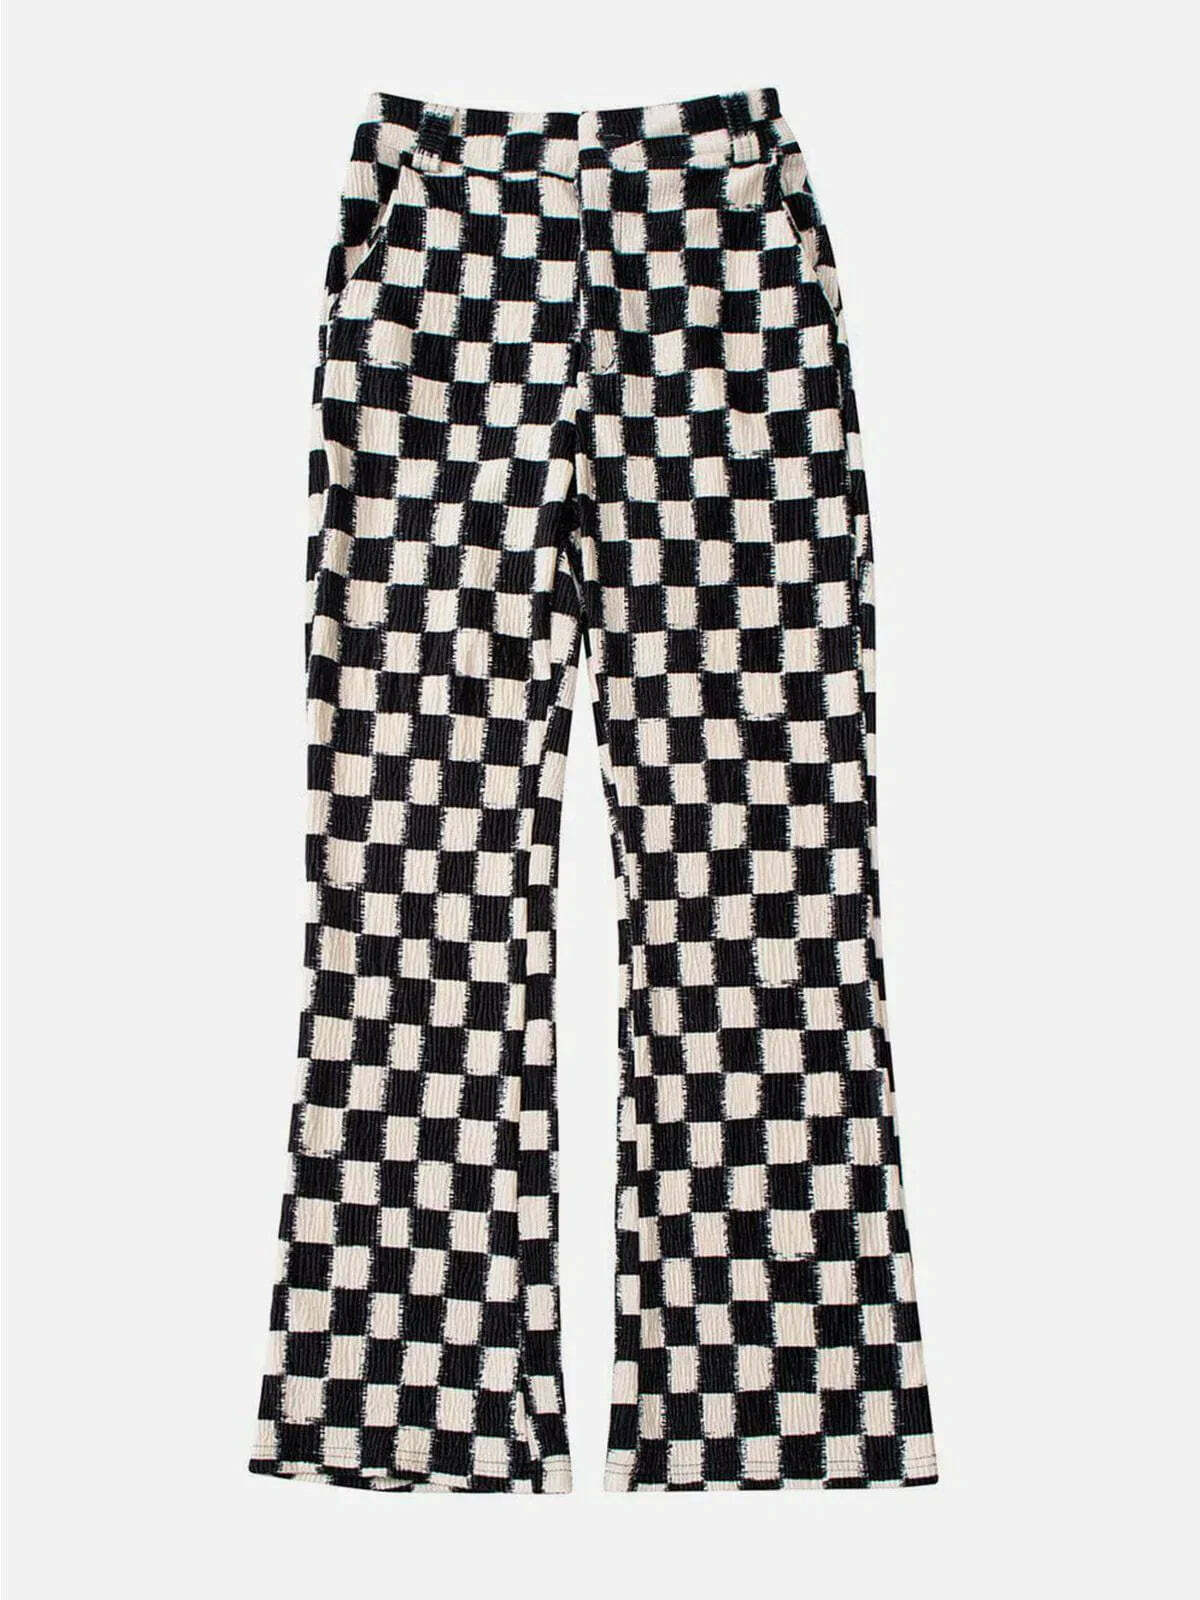 y2k elastic checkerboard pants edgy streetwear style 6374